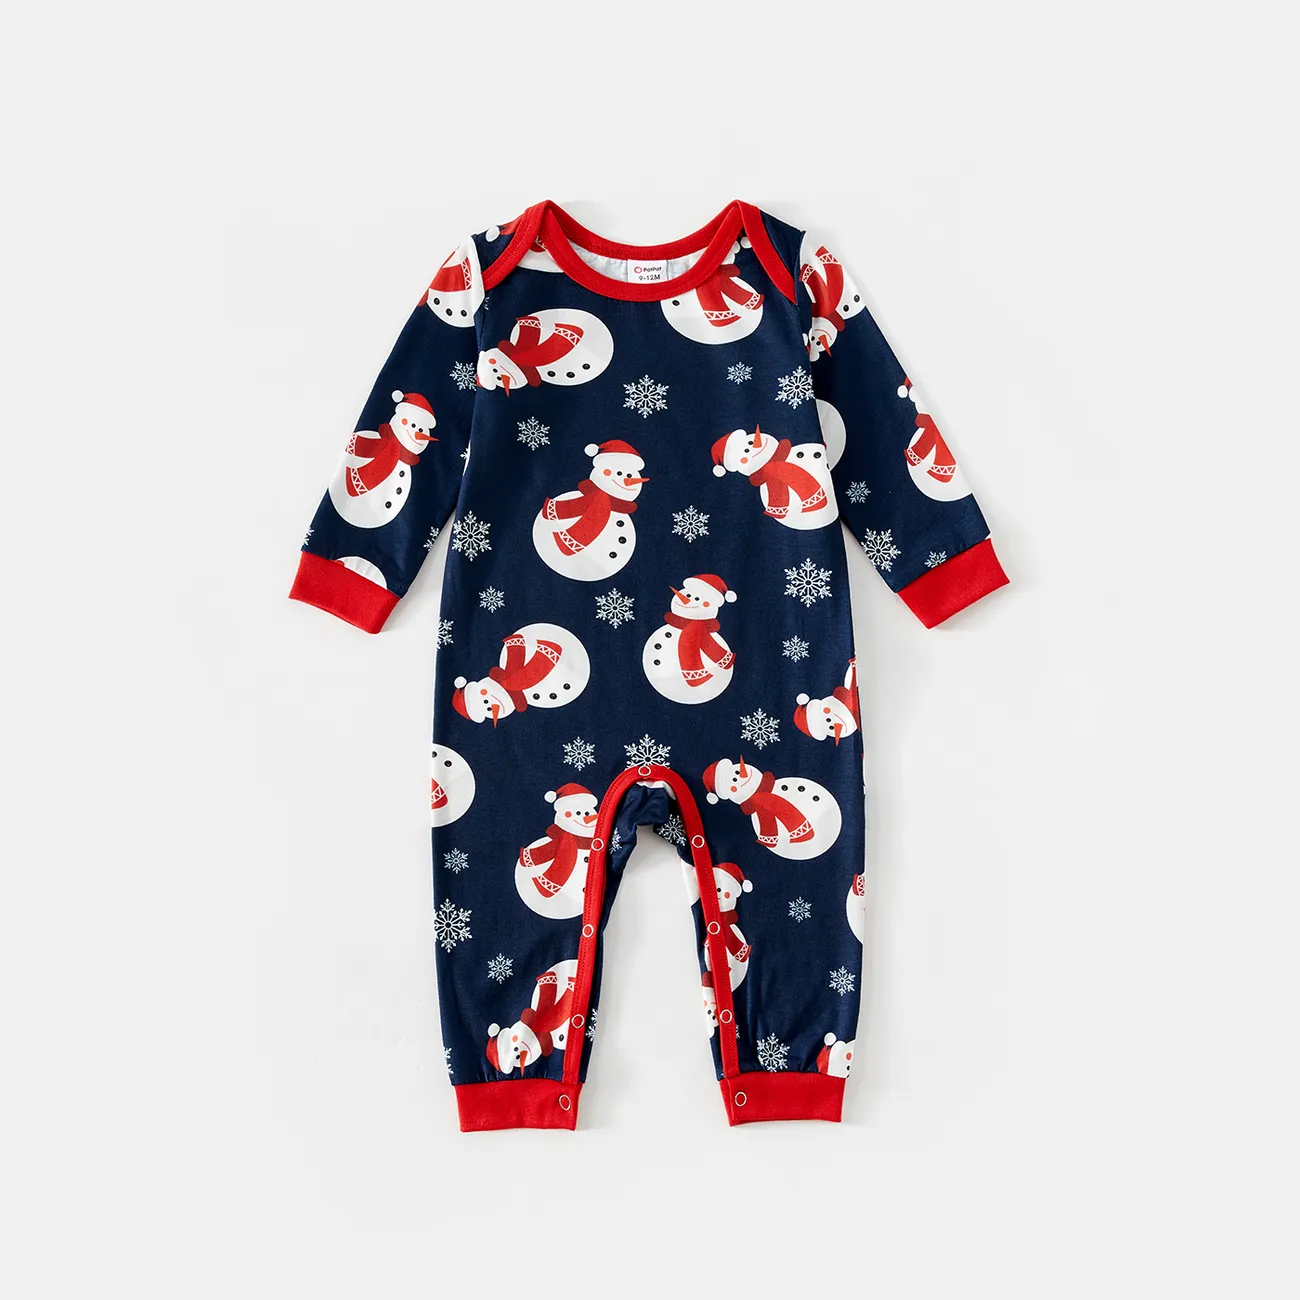 Christmas Snowman & Letter Print Family Matching Raglan-sleeve Pajamas Sets (Flame Resistant)  big image 1